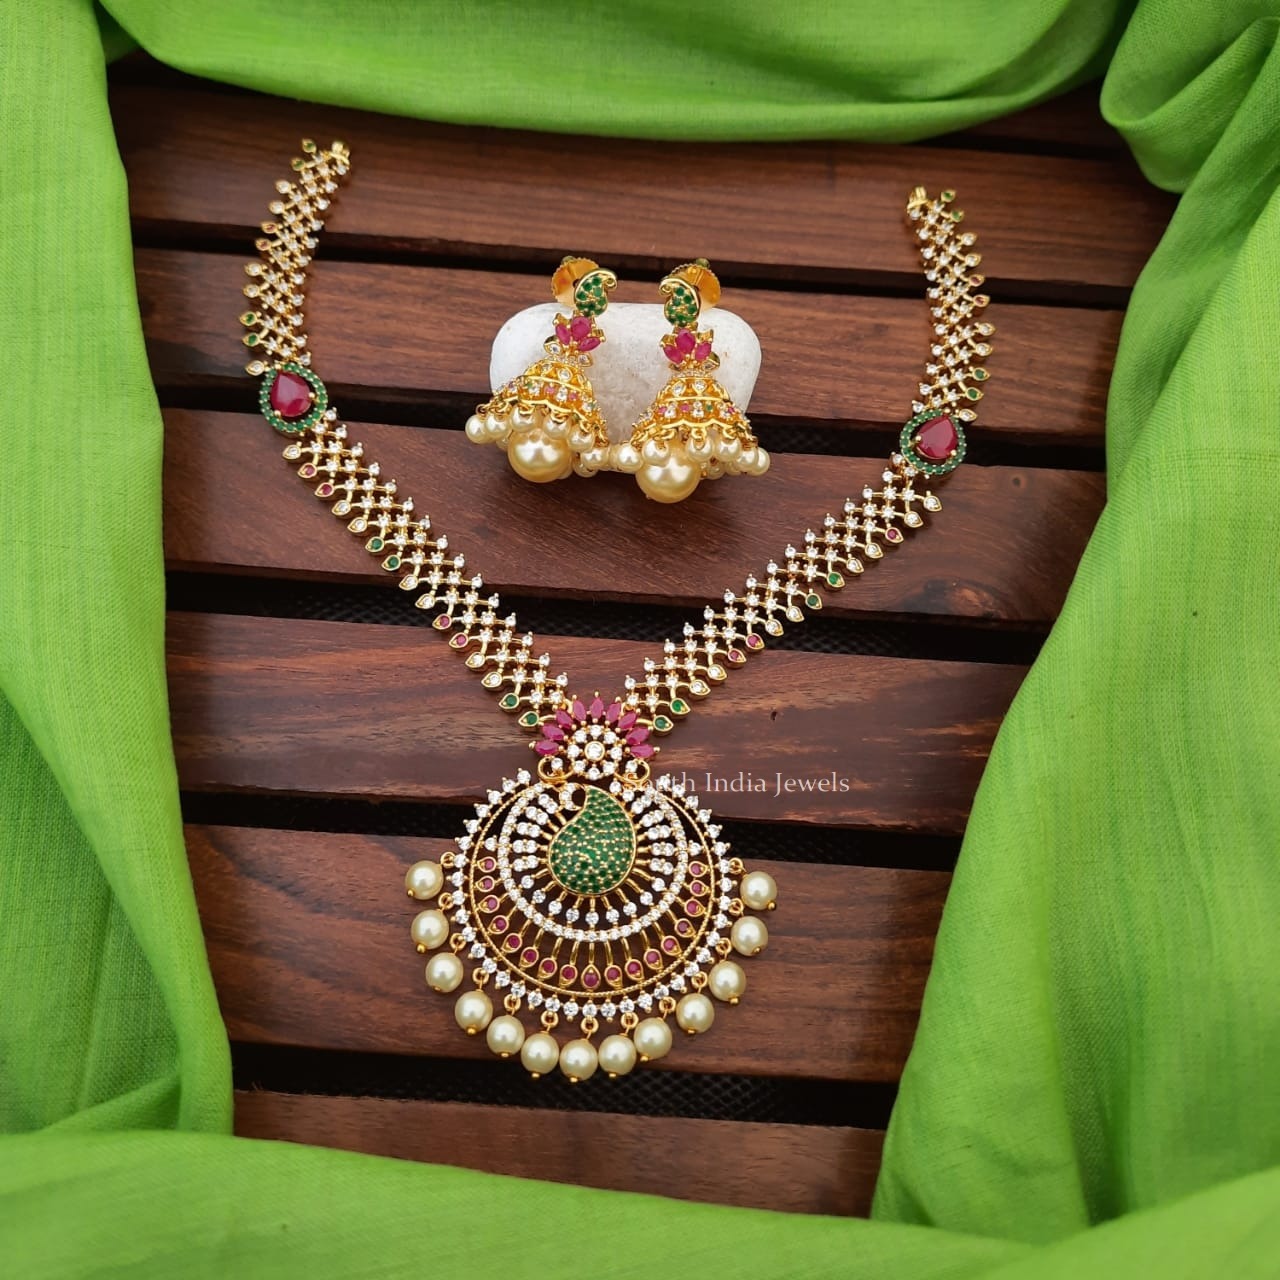 Beautiful Mango Design Pendant Necklace